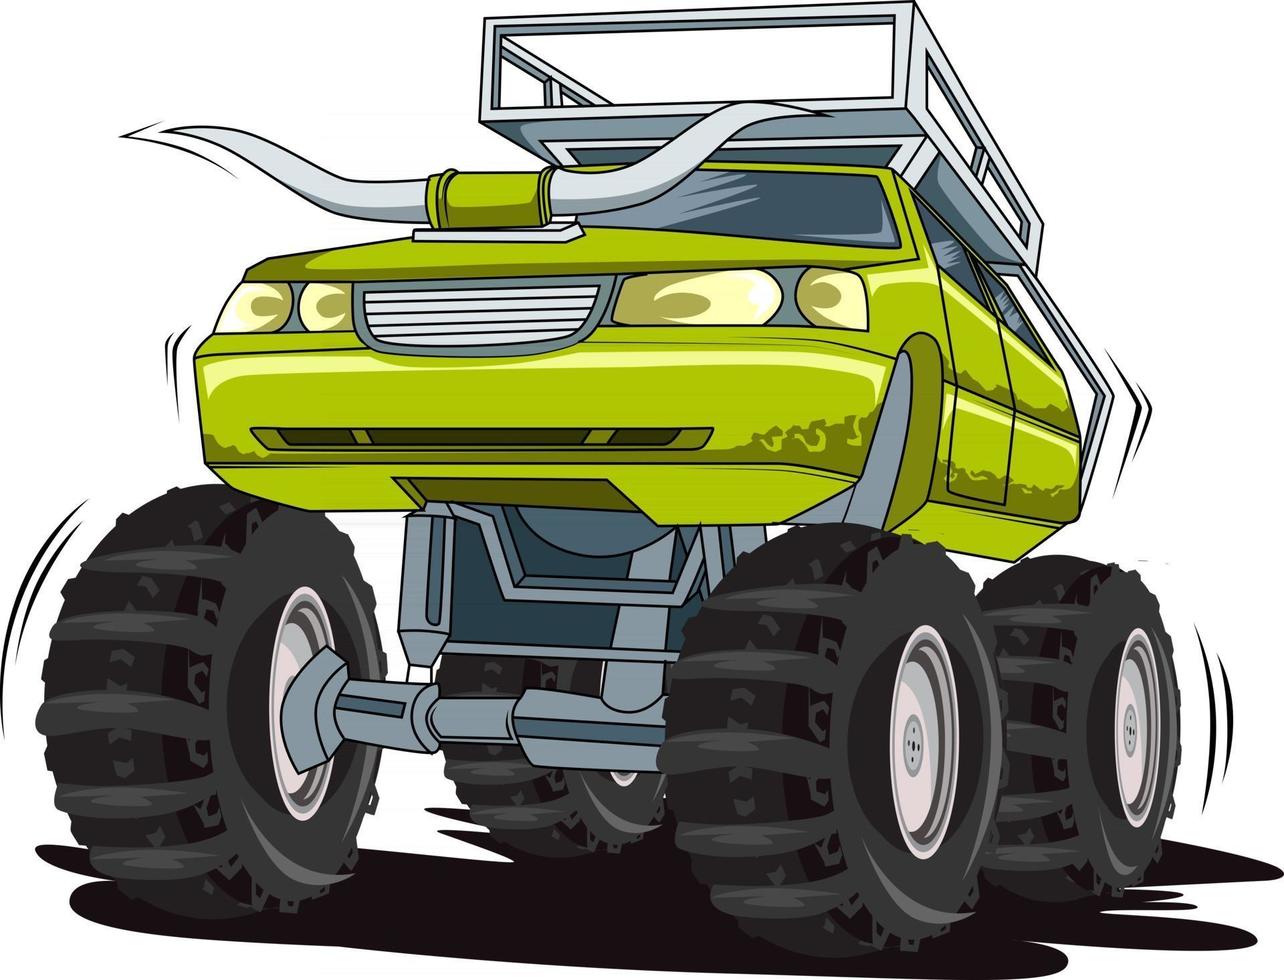 monster truck off-road illustratie vector